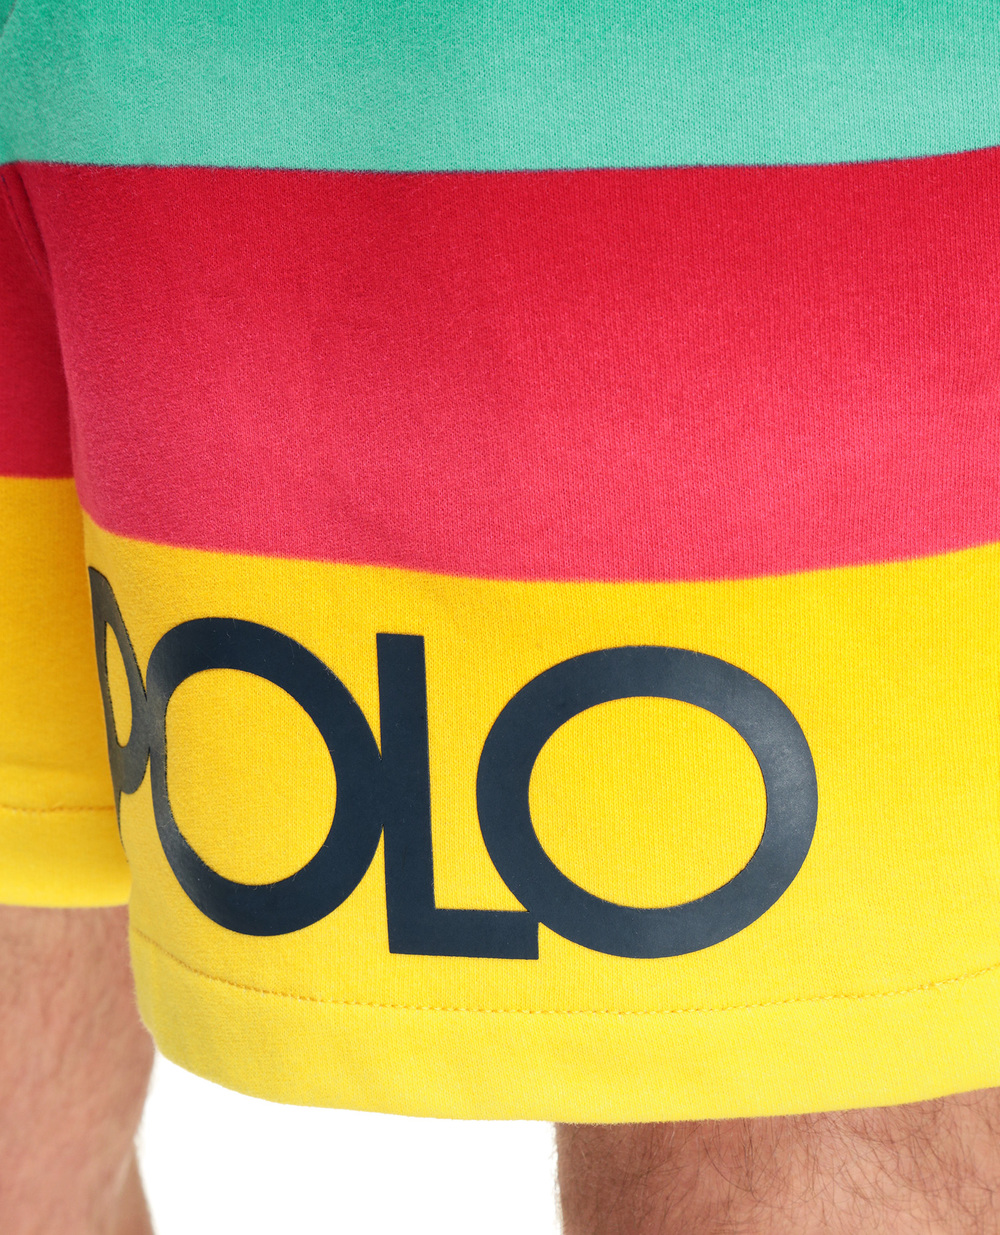 Шорты Polo Ralph Lauren 710842859001, разноцветный цвет • Купить в интернет-магазине Kameron